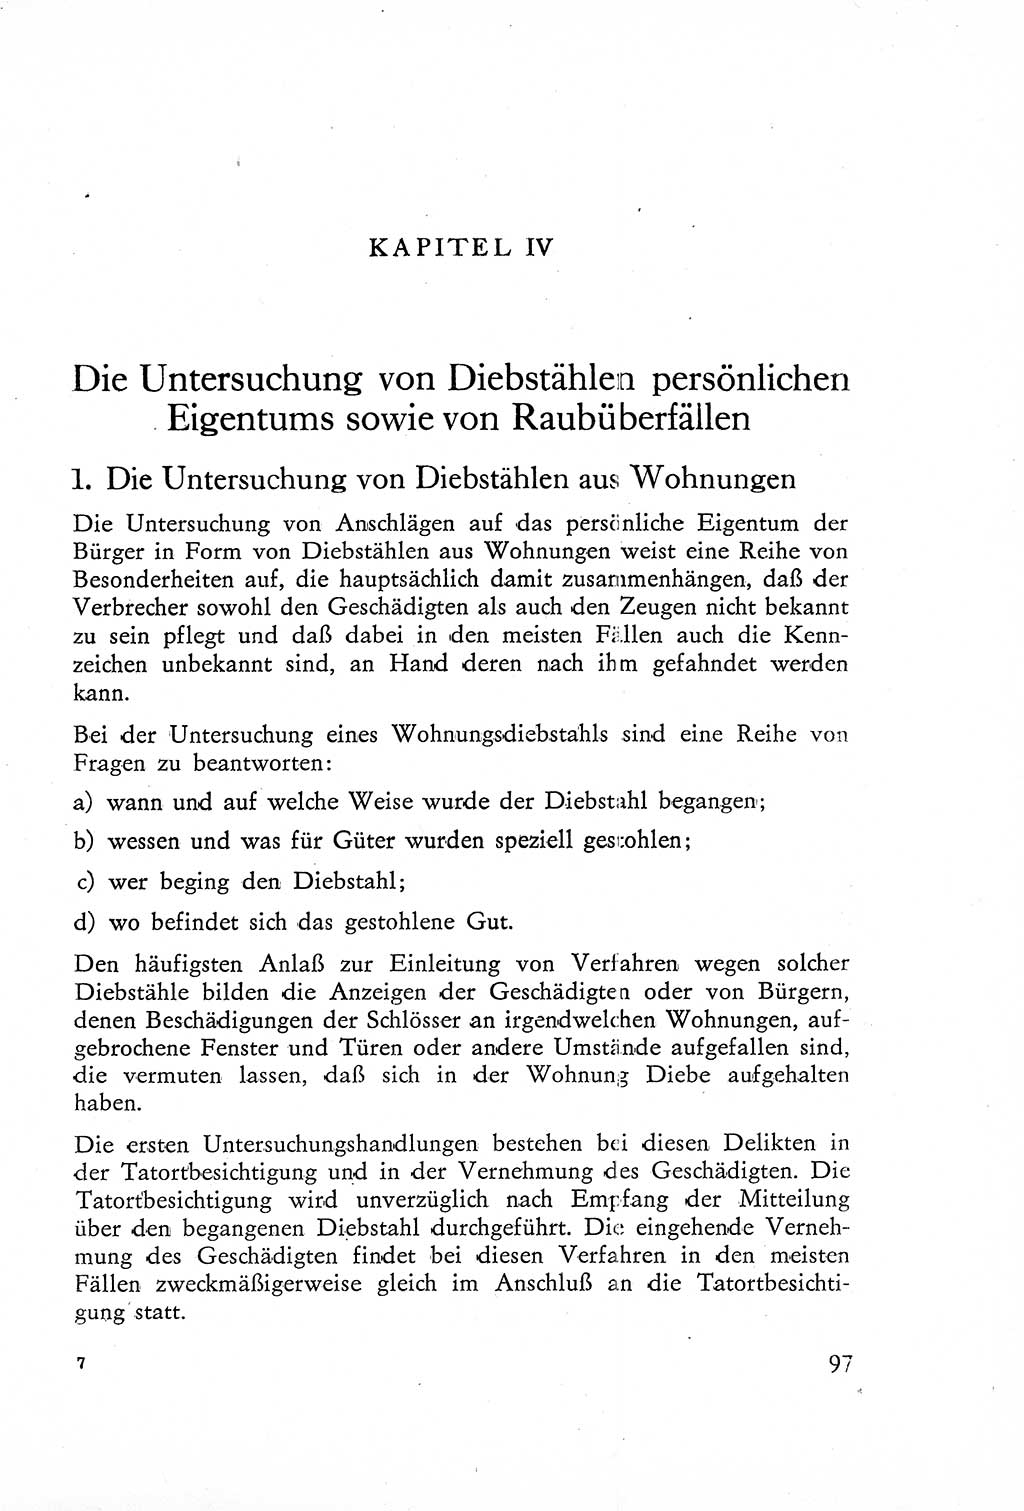 Die Untersuchung einzelner Verbrechensarten [Deutsche Demokratische Republik (DDR)] 1960, Seite 97 (Unters. Verbr.-Art. DDR 1960, S. 97)